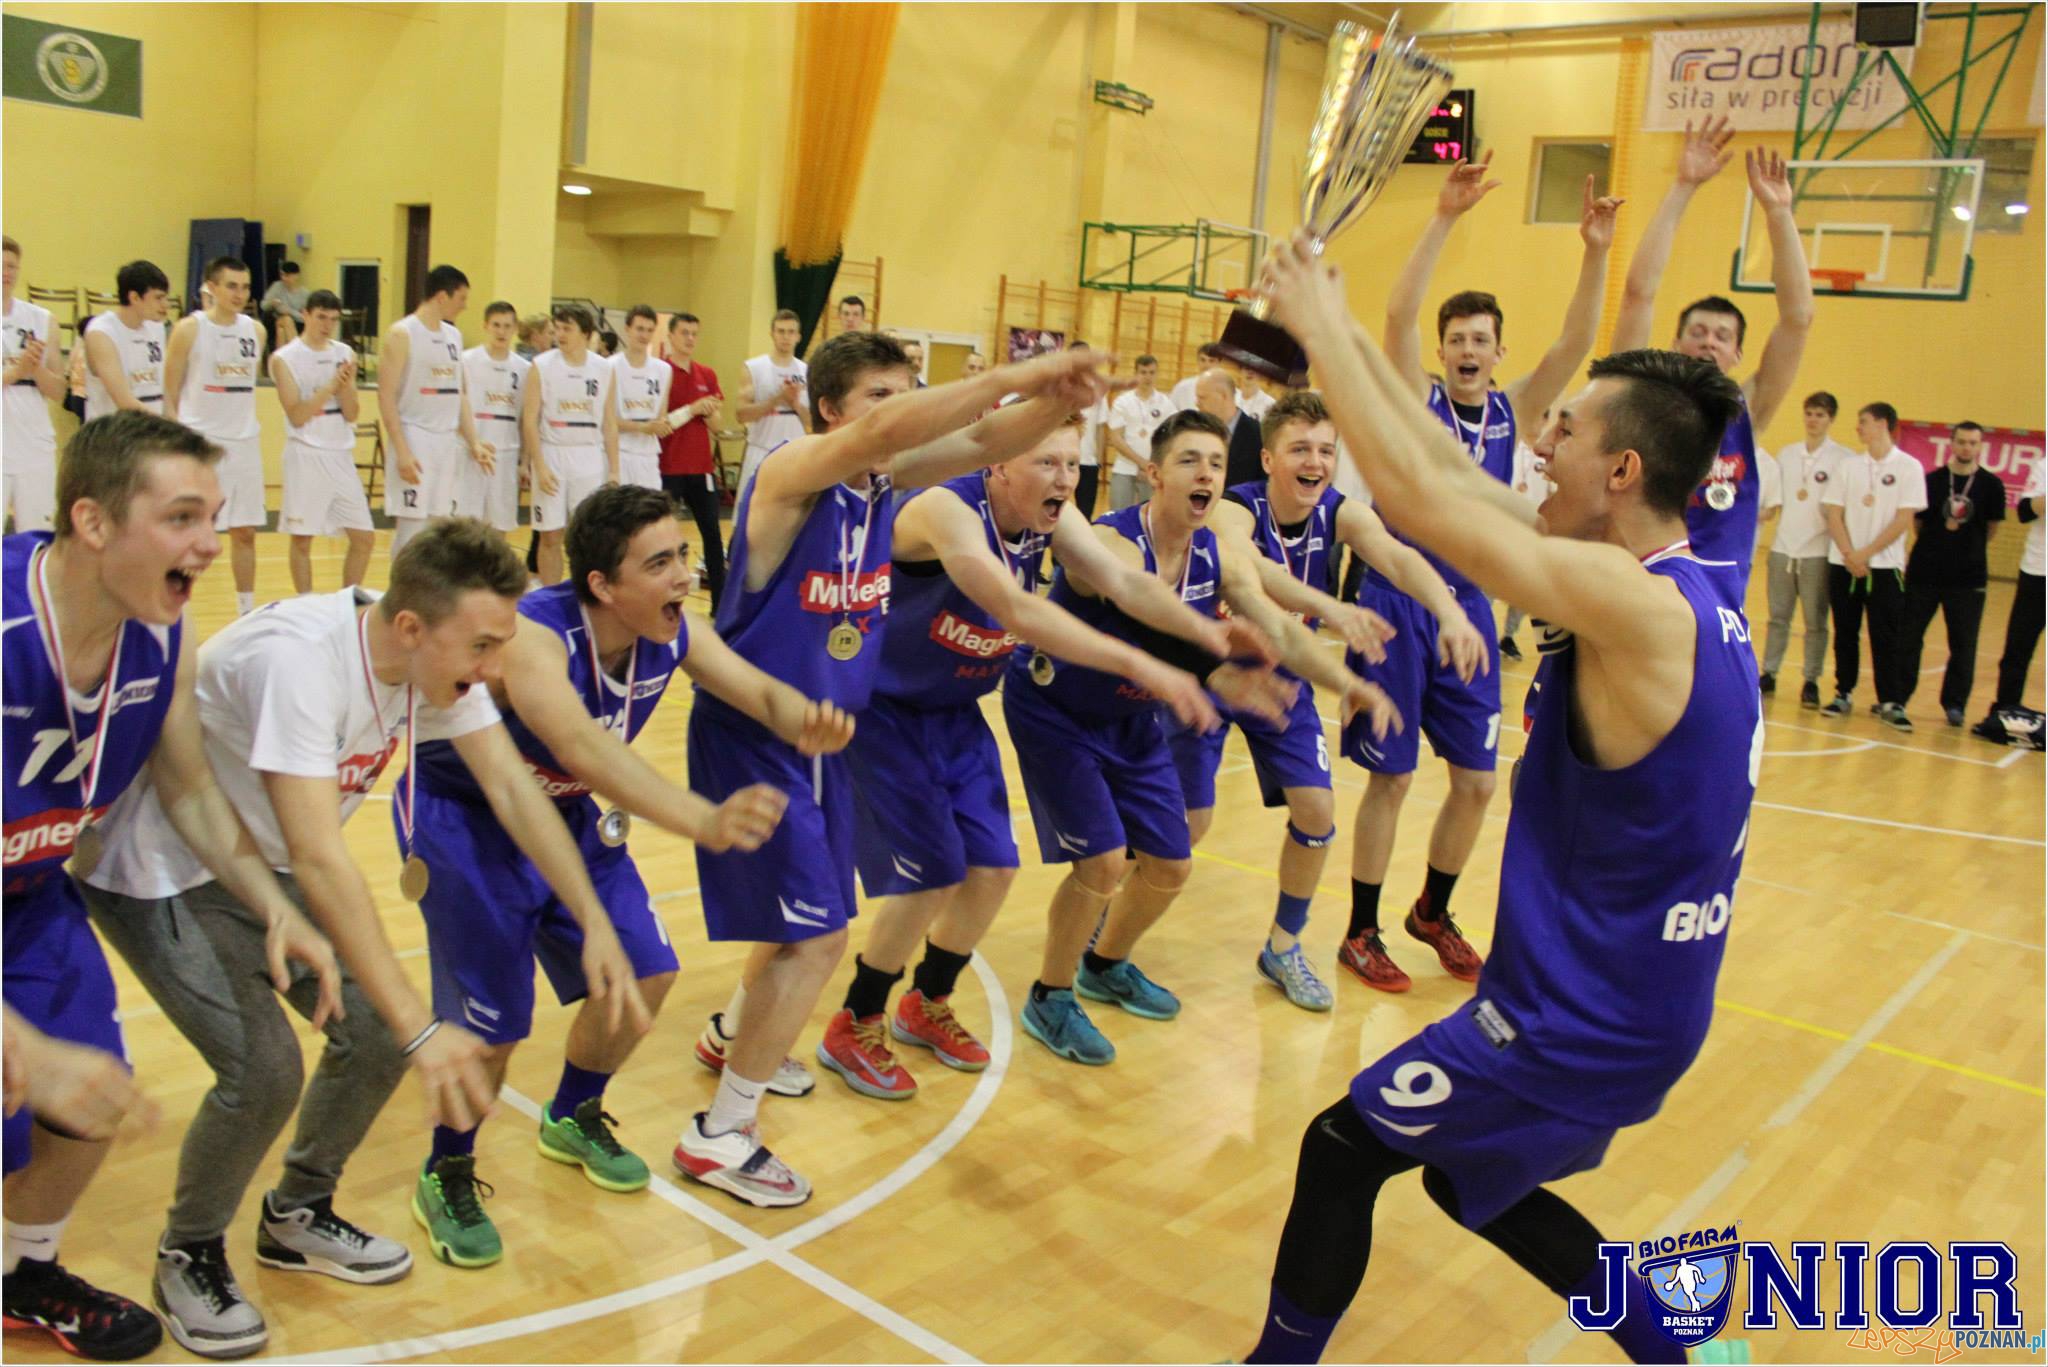 Biofarm Basket Junior Poznań wywalczył srebrny medal Mistrzostw Polski Juniorów U18  Foto: Biofarm Basket Junior Poznań